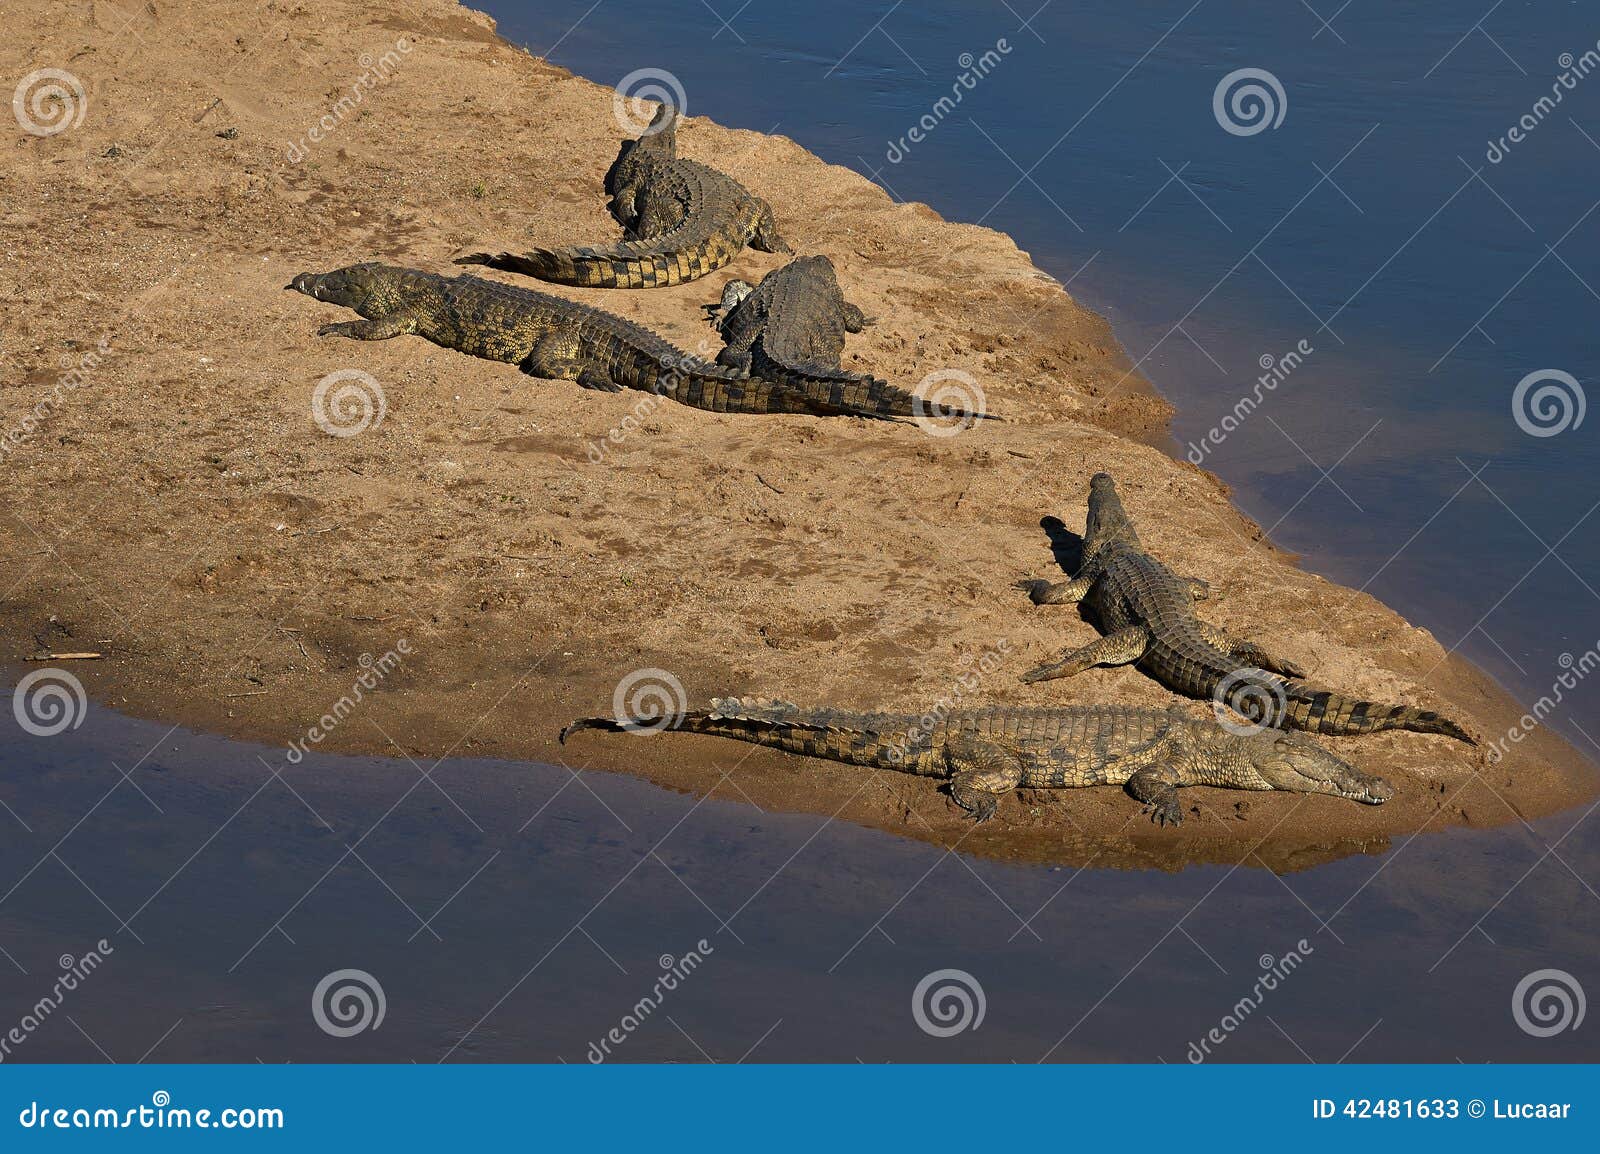 crocodiles at crocodile river, kruger national park